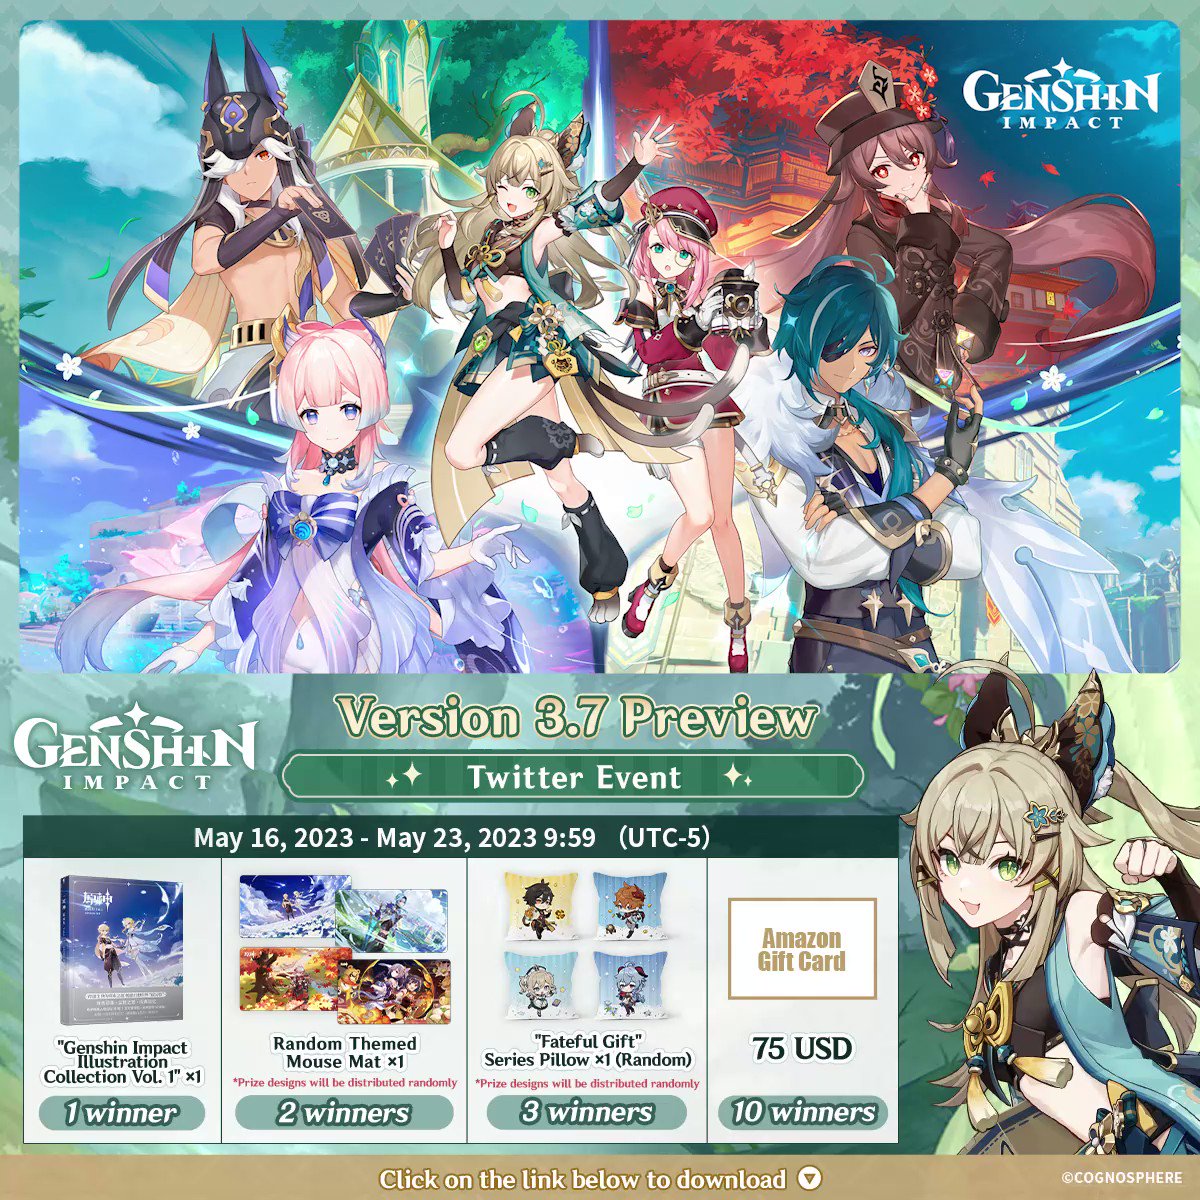 Genshin Impact Version 3.7 Preview